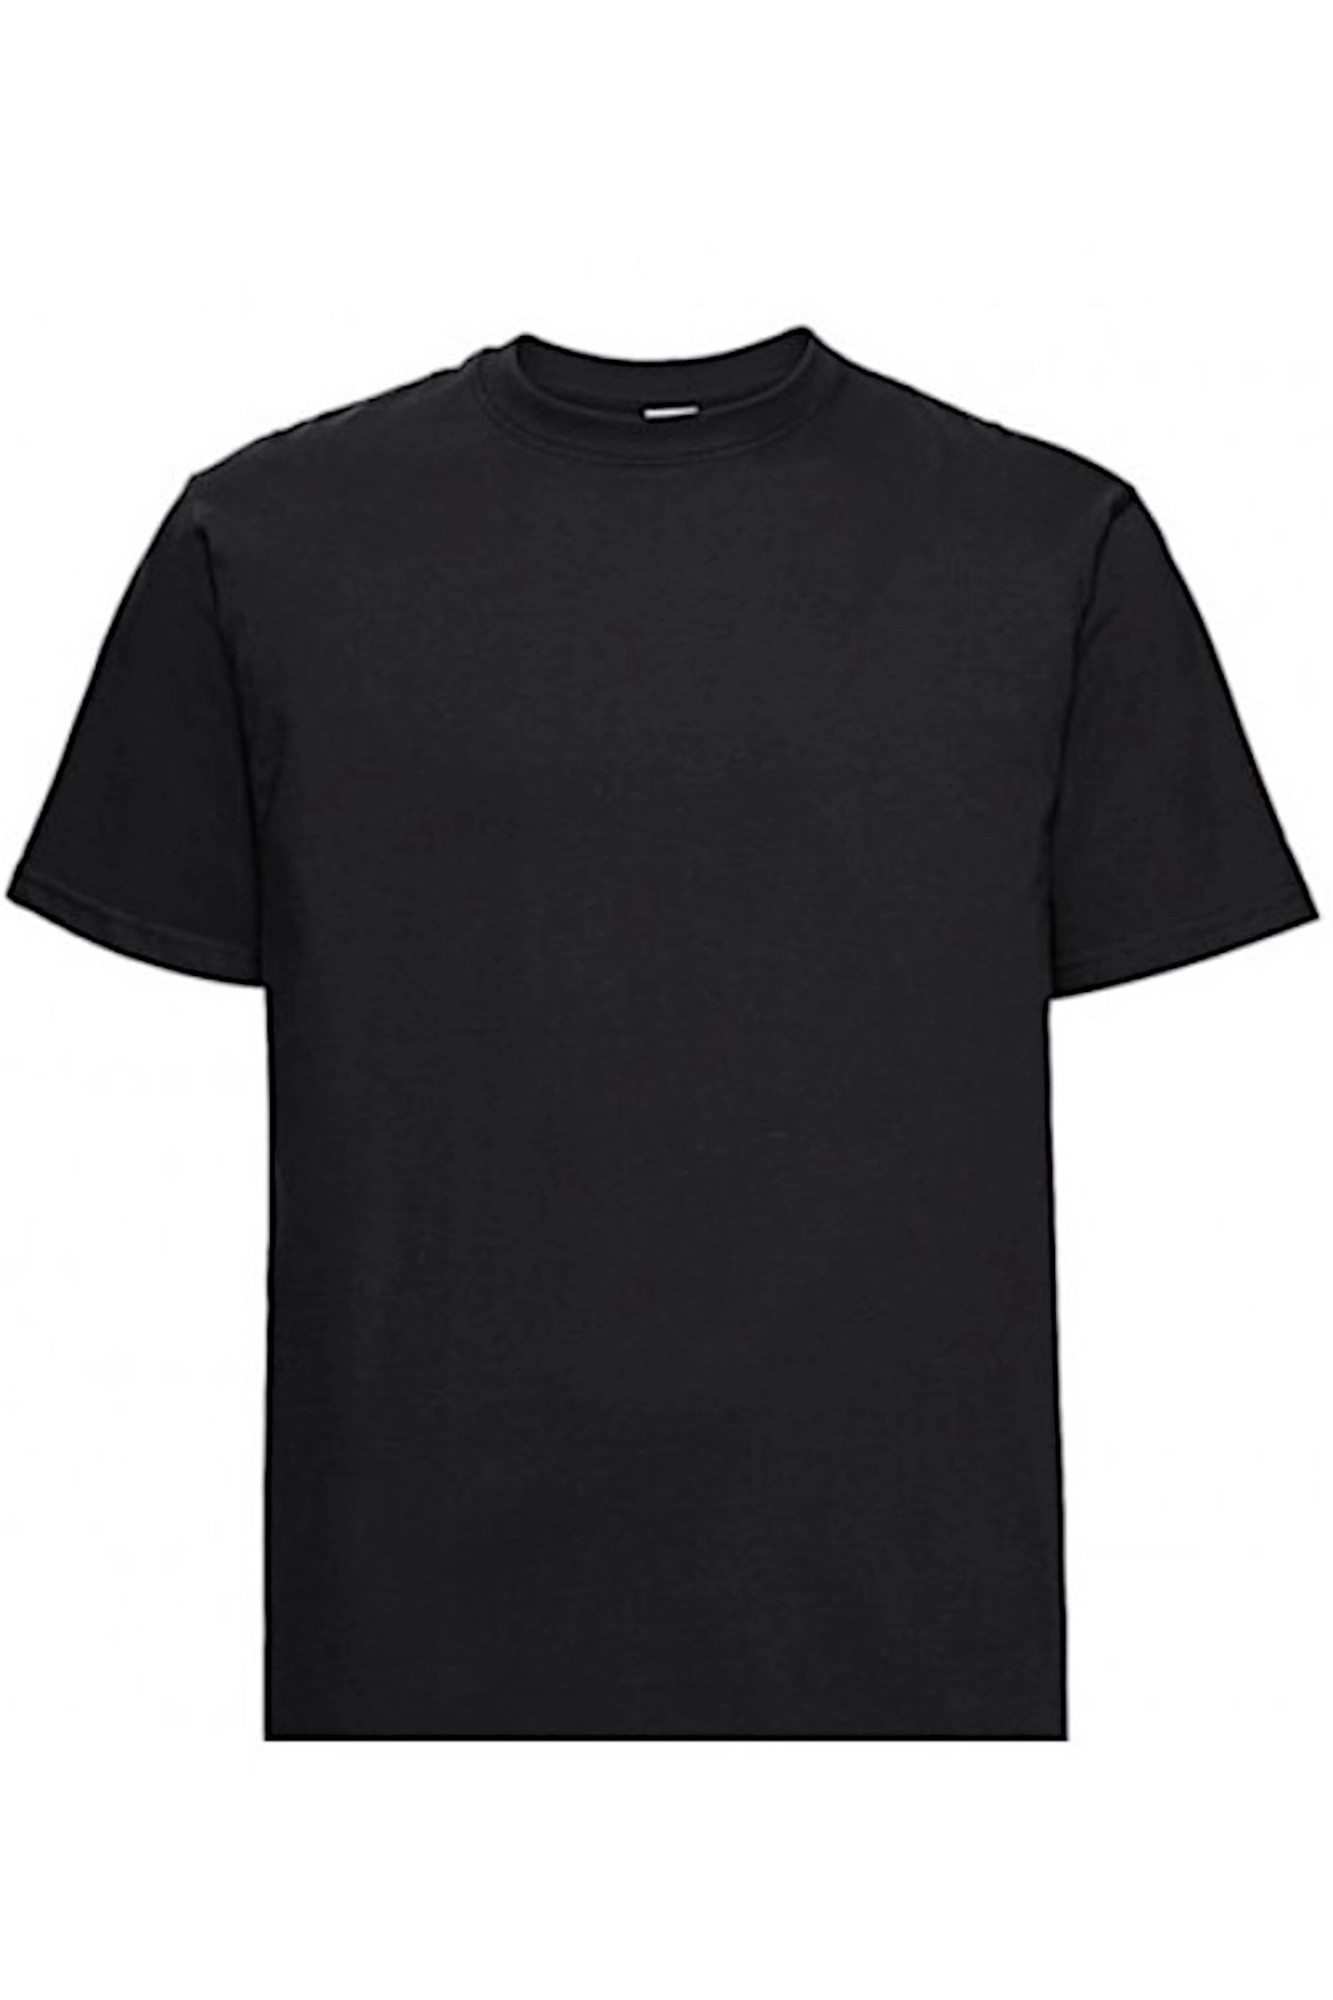 Pánské tričko 002 black - NOVITI černá XL